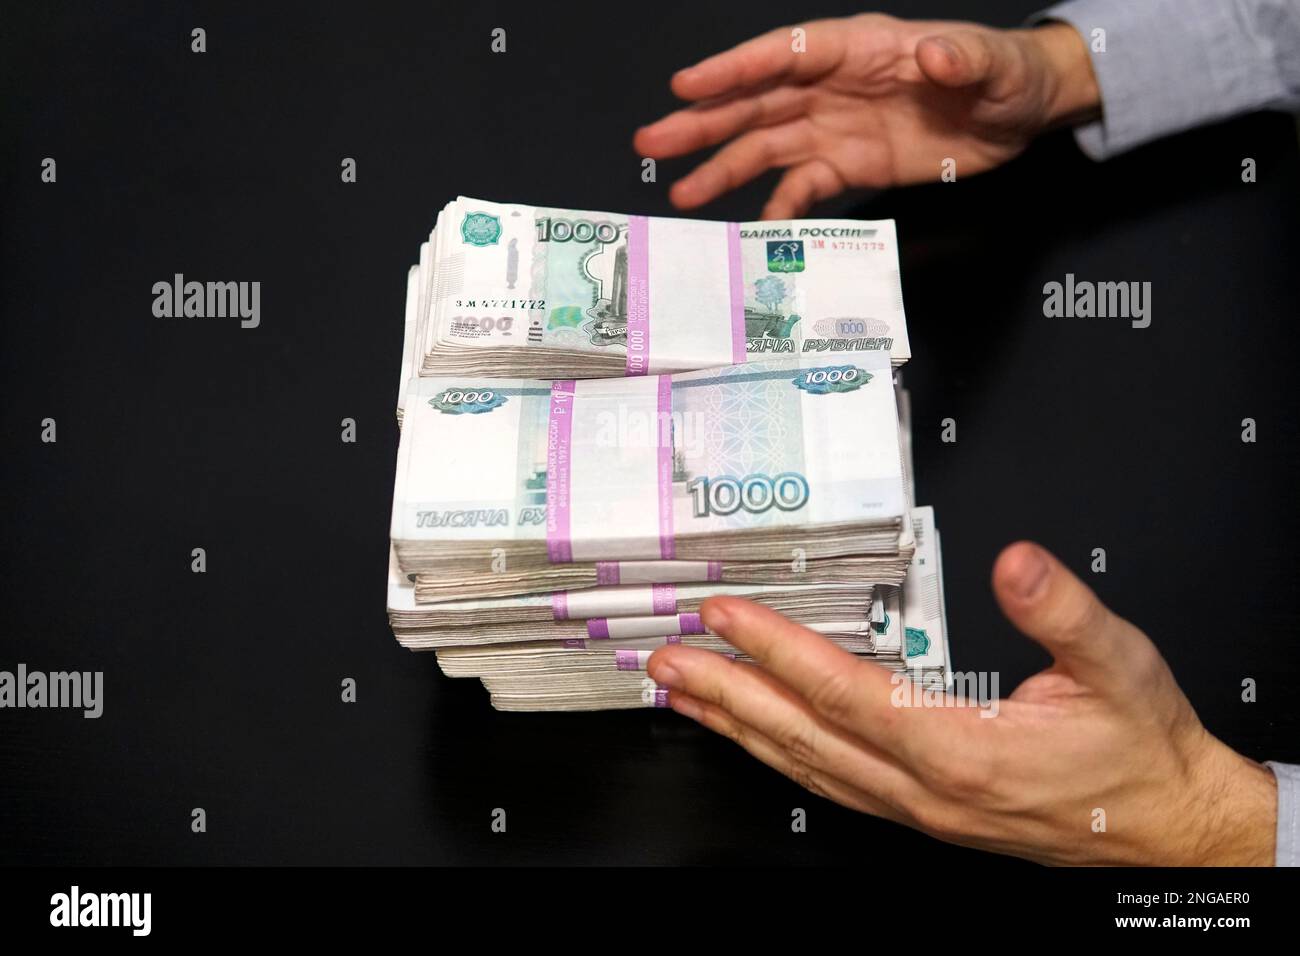 les mains des hommes atteignent un wad d'argent. Un million de roubles sur la table noire. Le concept de richesse et de réussite. Banque D'Images